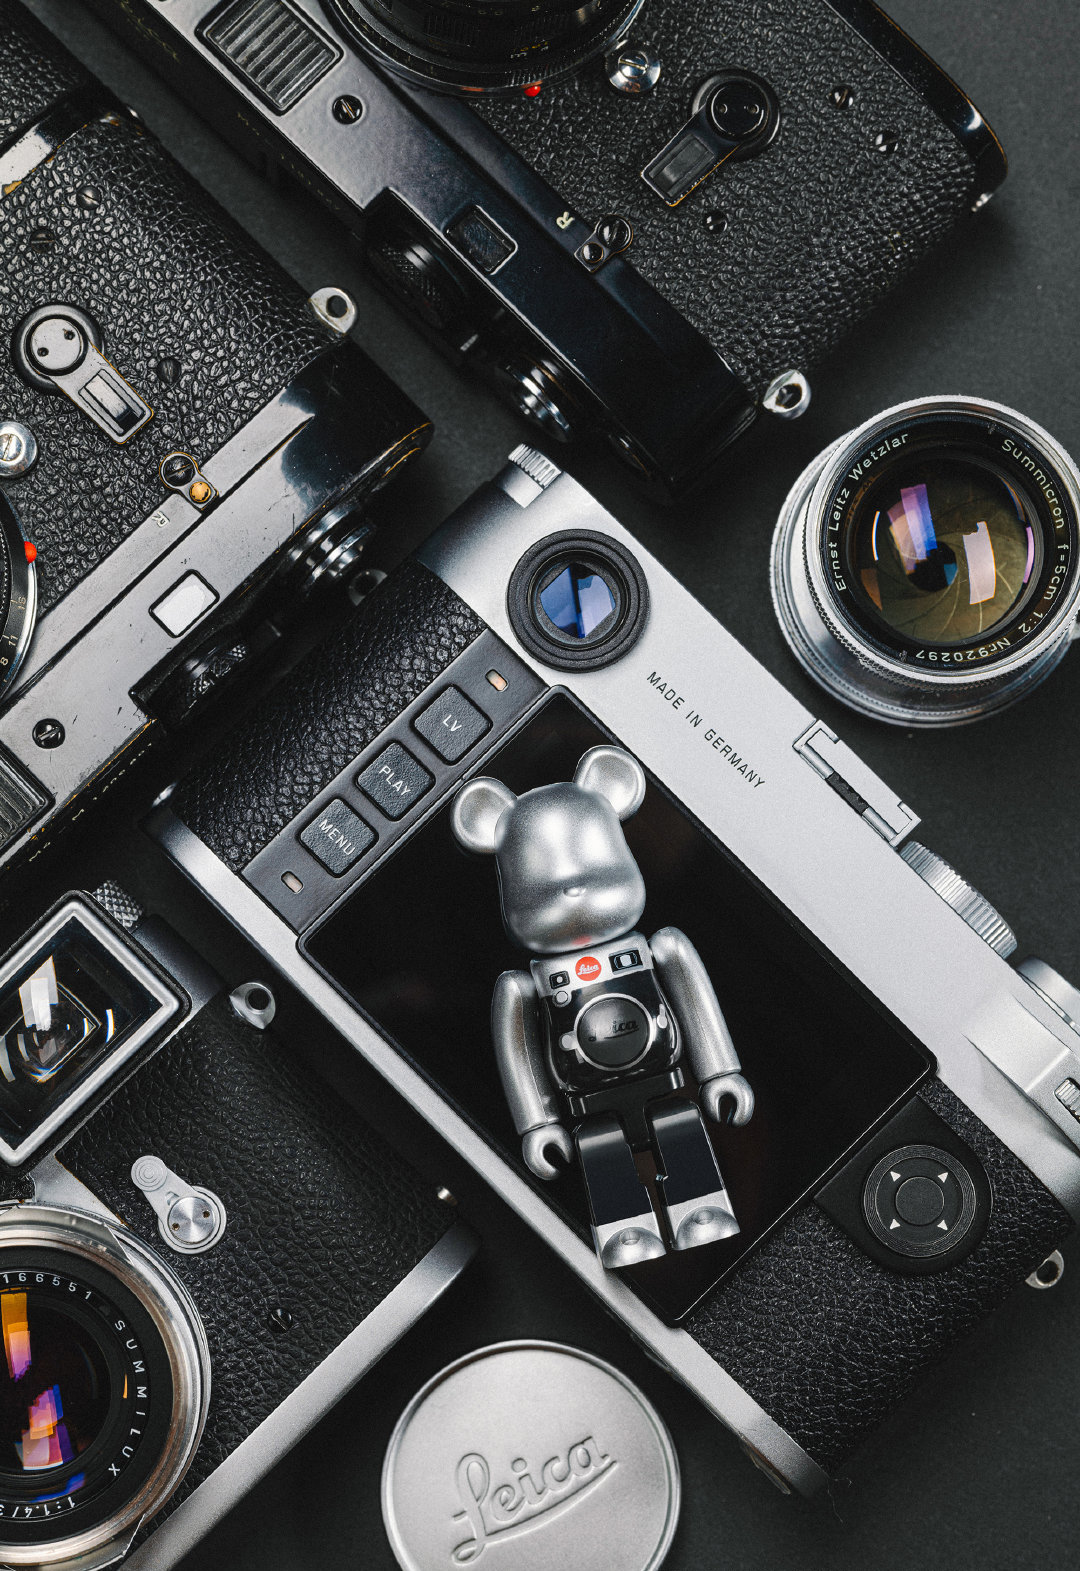 Bạn là một người yêu thích sự sang trọng và đẳng cấp? Hãy xem qua bức ảnh về Leica x Medicom Toy, nó sẽ khiến bạn không thể rời mắt! Sự kết hợp giữa máy ảnh Leica đỉnh cao cùng với những bộ sưu tập đặc biệt từ Medicom Toy là một tác phẩm nghệ thuật đẳng cấp mà bạn không thể bỏ qua.